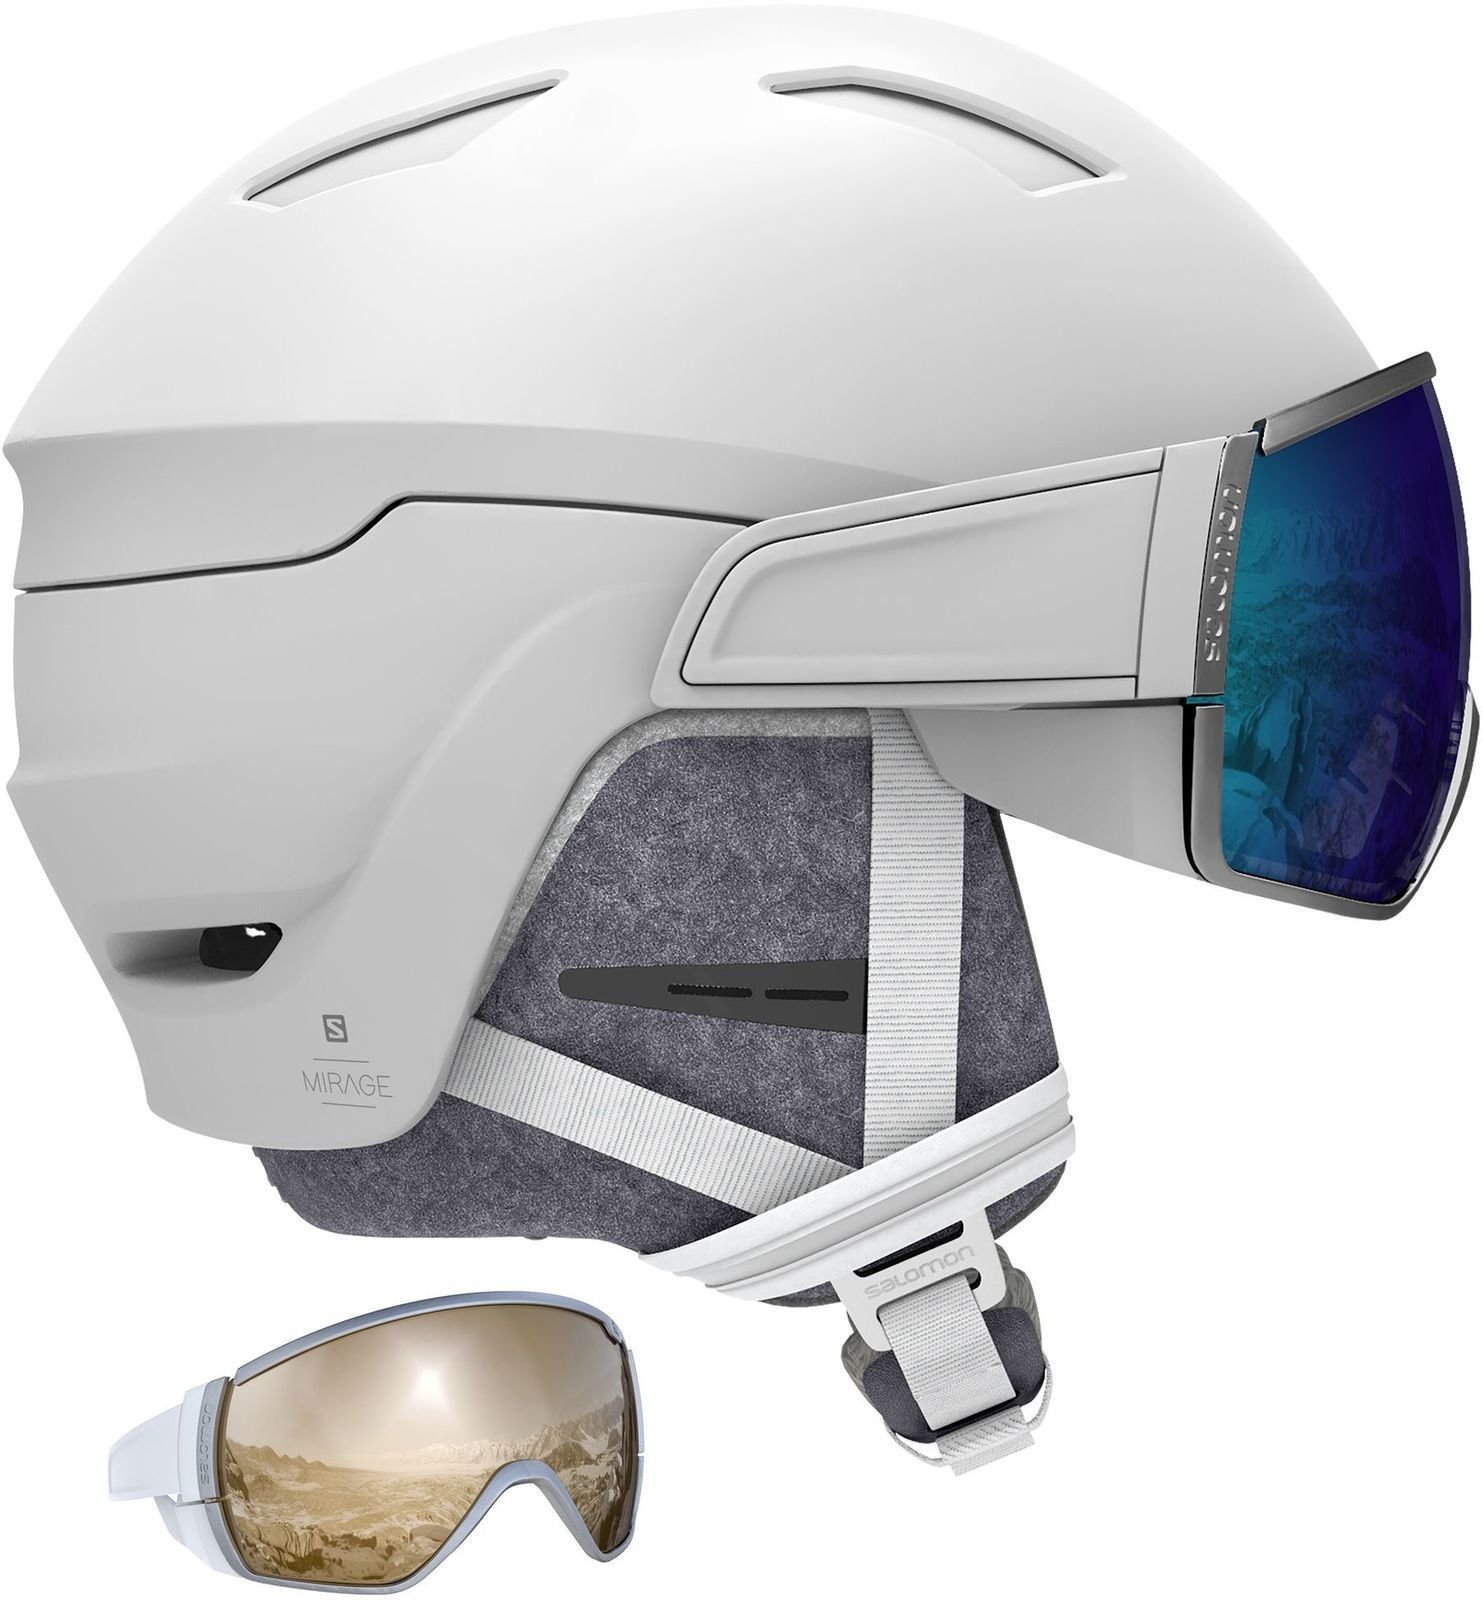 Ski Helmet Salomon Mirage White M (56-59 cm) Ski Helmet